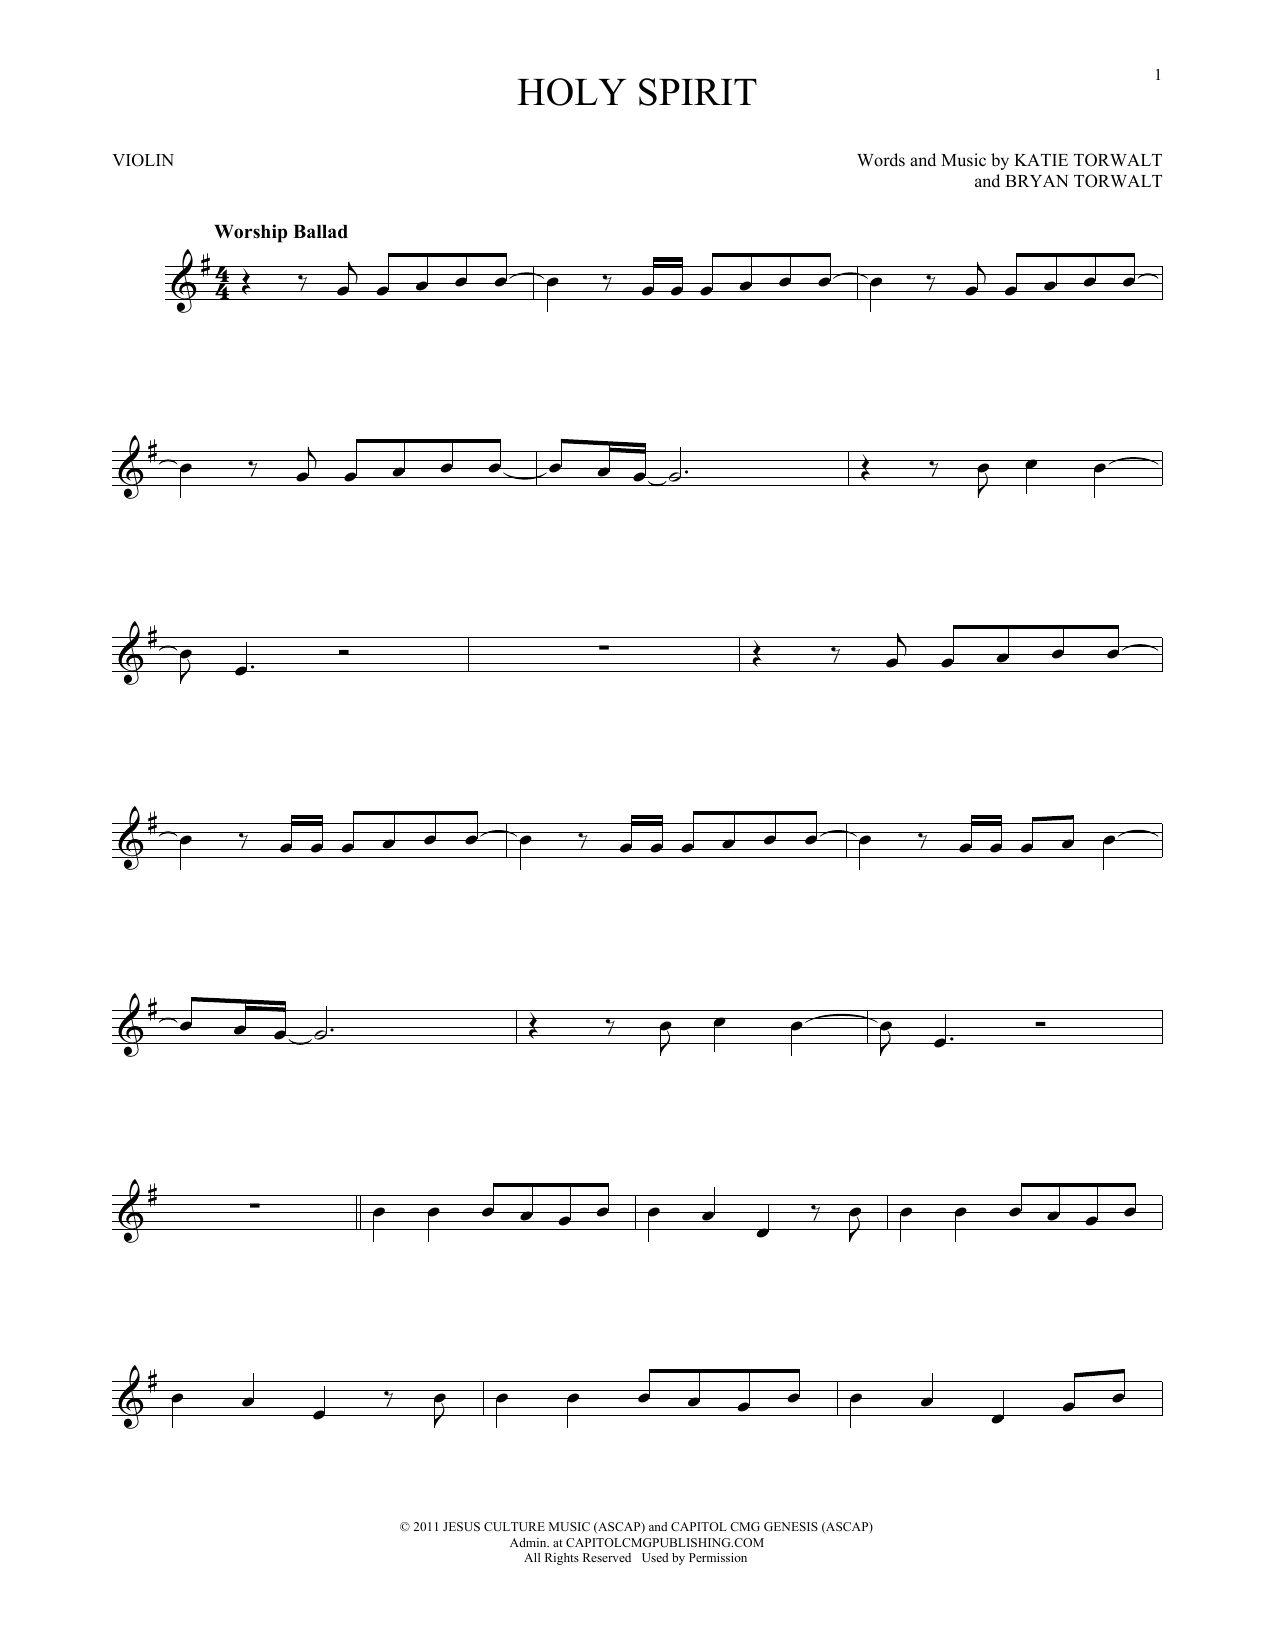 Bryan Torwalt Holy Spirit Sheet Music Notes & Chords for Piano (Big Notes) - Download or Print PDF